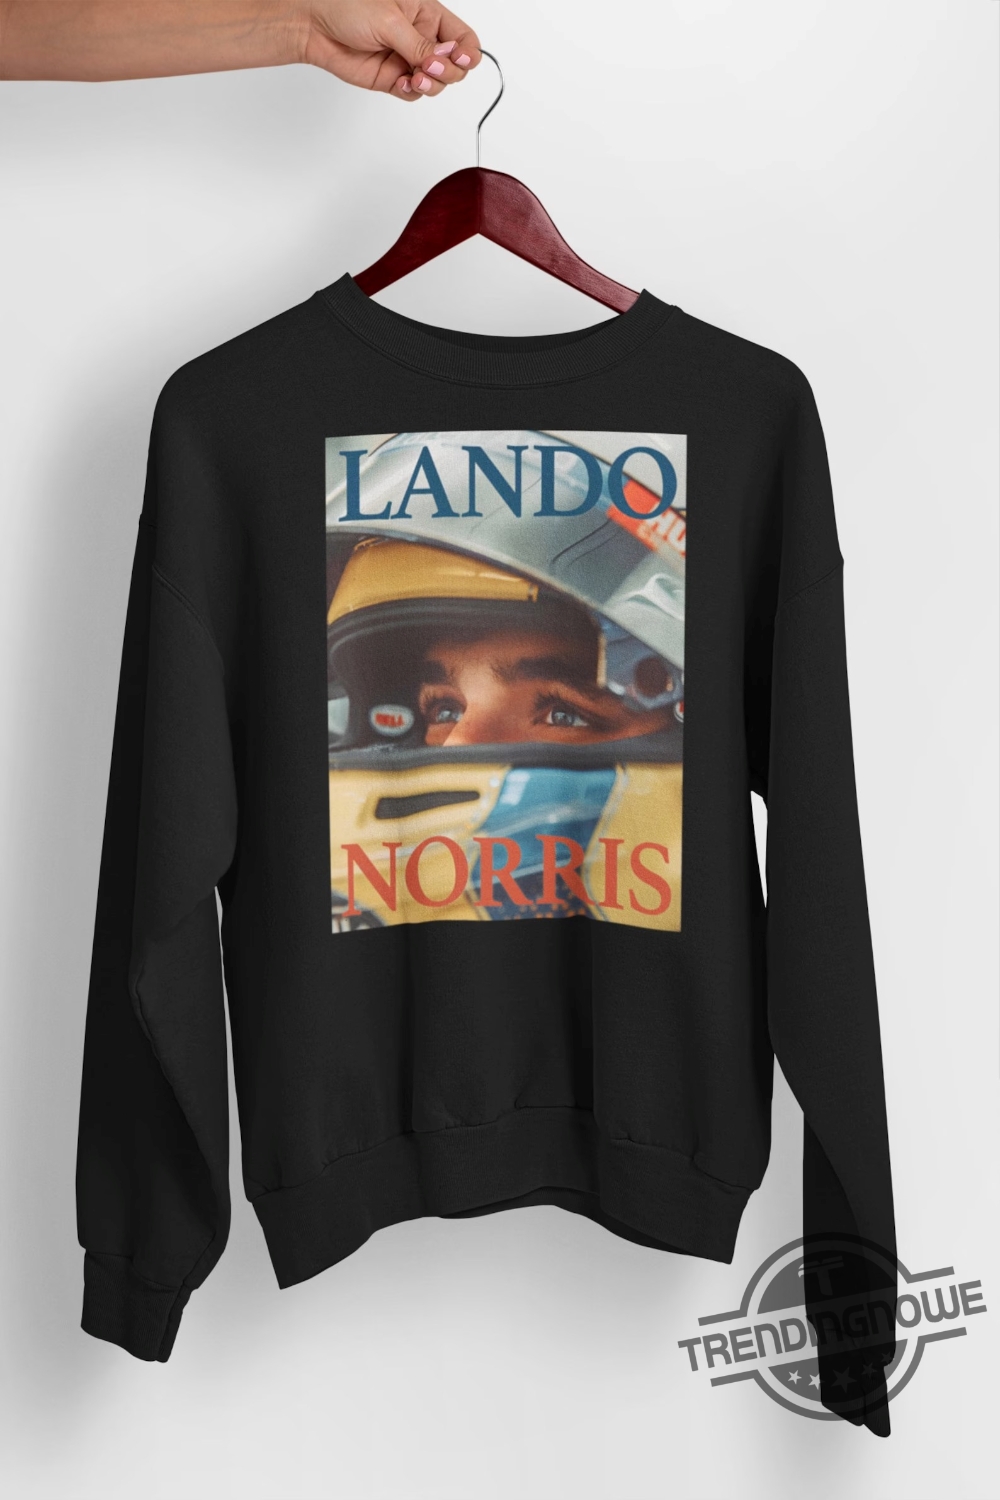 Lando Norris T Shirt Lando Norris Hoodie Racing Team Sweatshirt Driver Shirt Fan Gift Nor4 Top Grand Prix Shirt Racing Driver Fan Tee